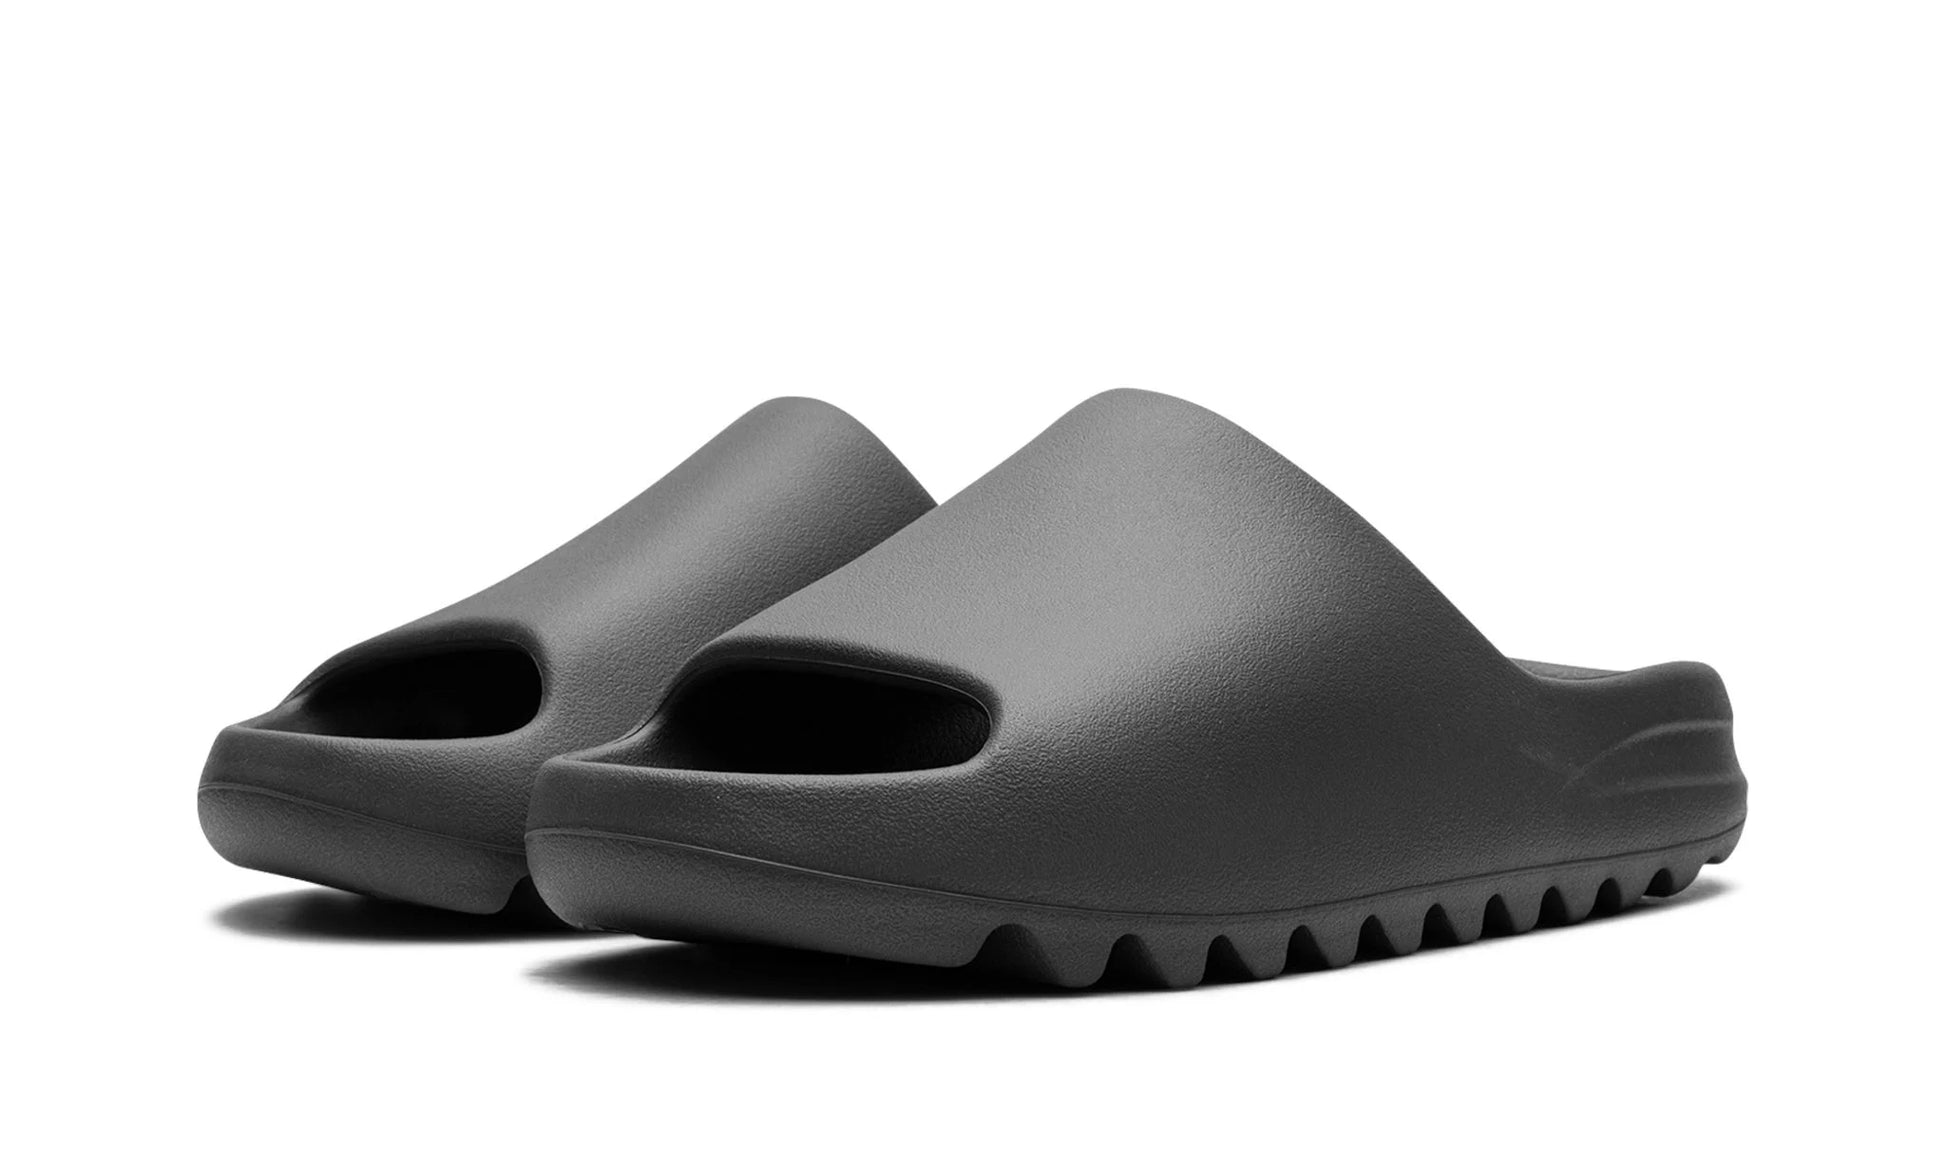 adidas YEEZY Slides, Authenticity Guaranteed